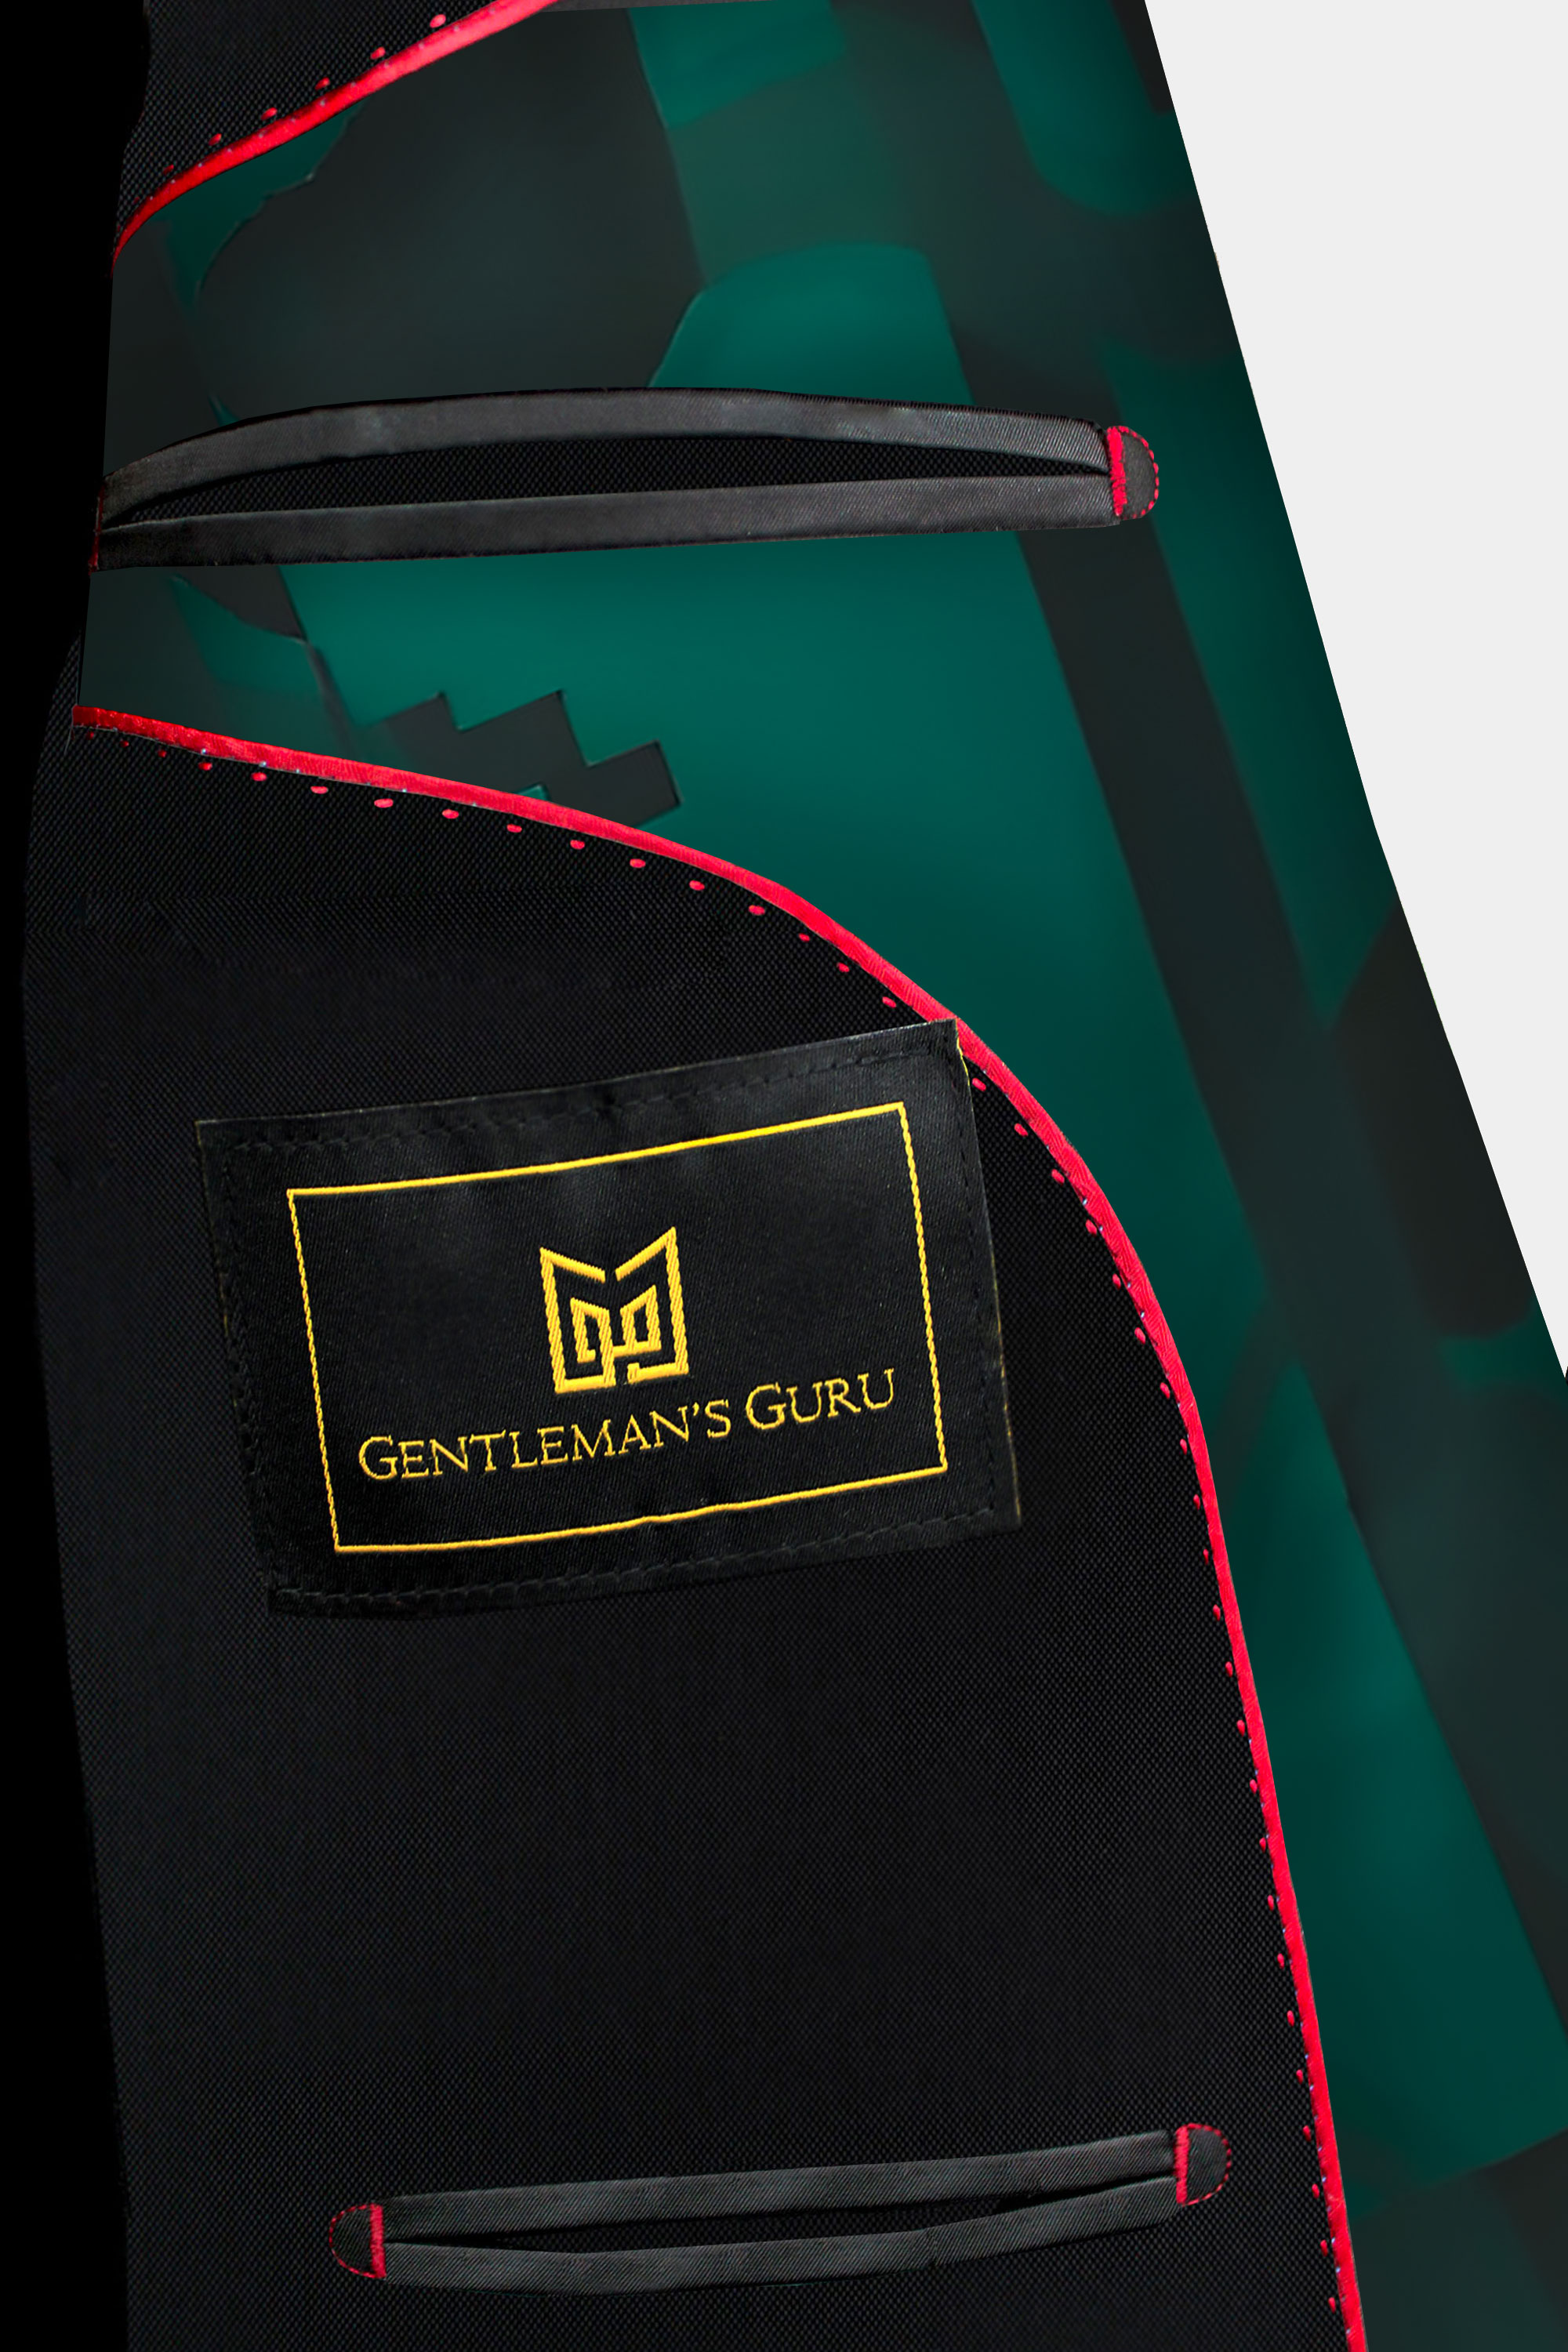 Inside-Green-and-Black-Suit-from-Gentlemansguru.com